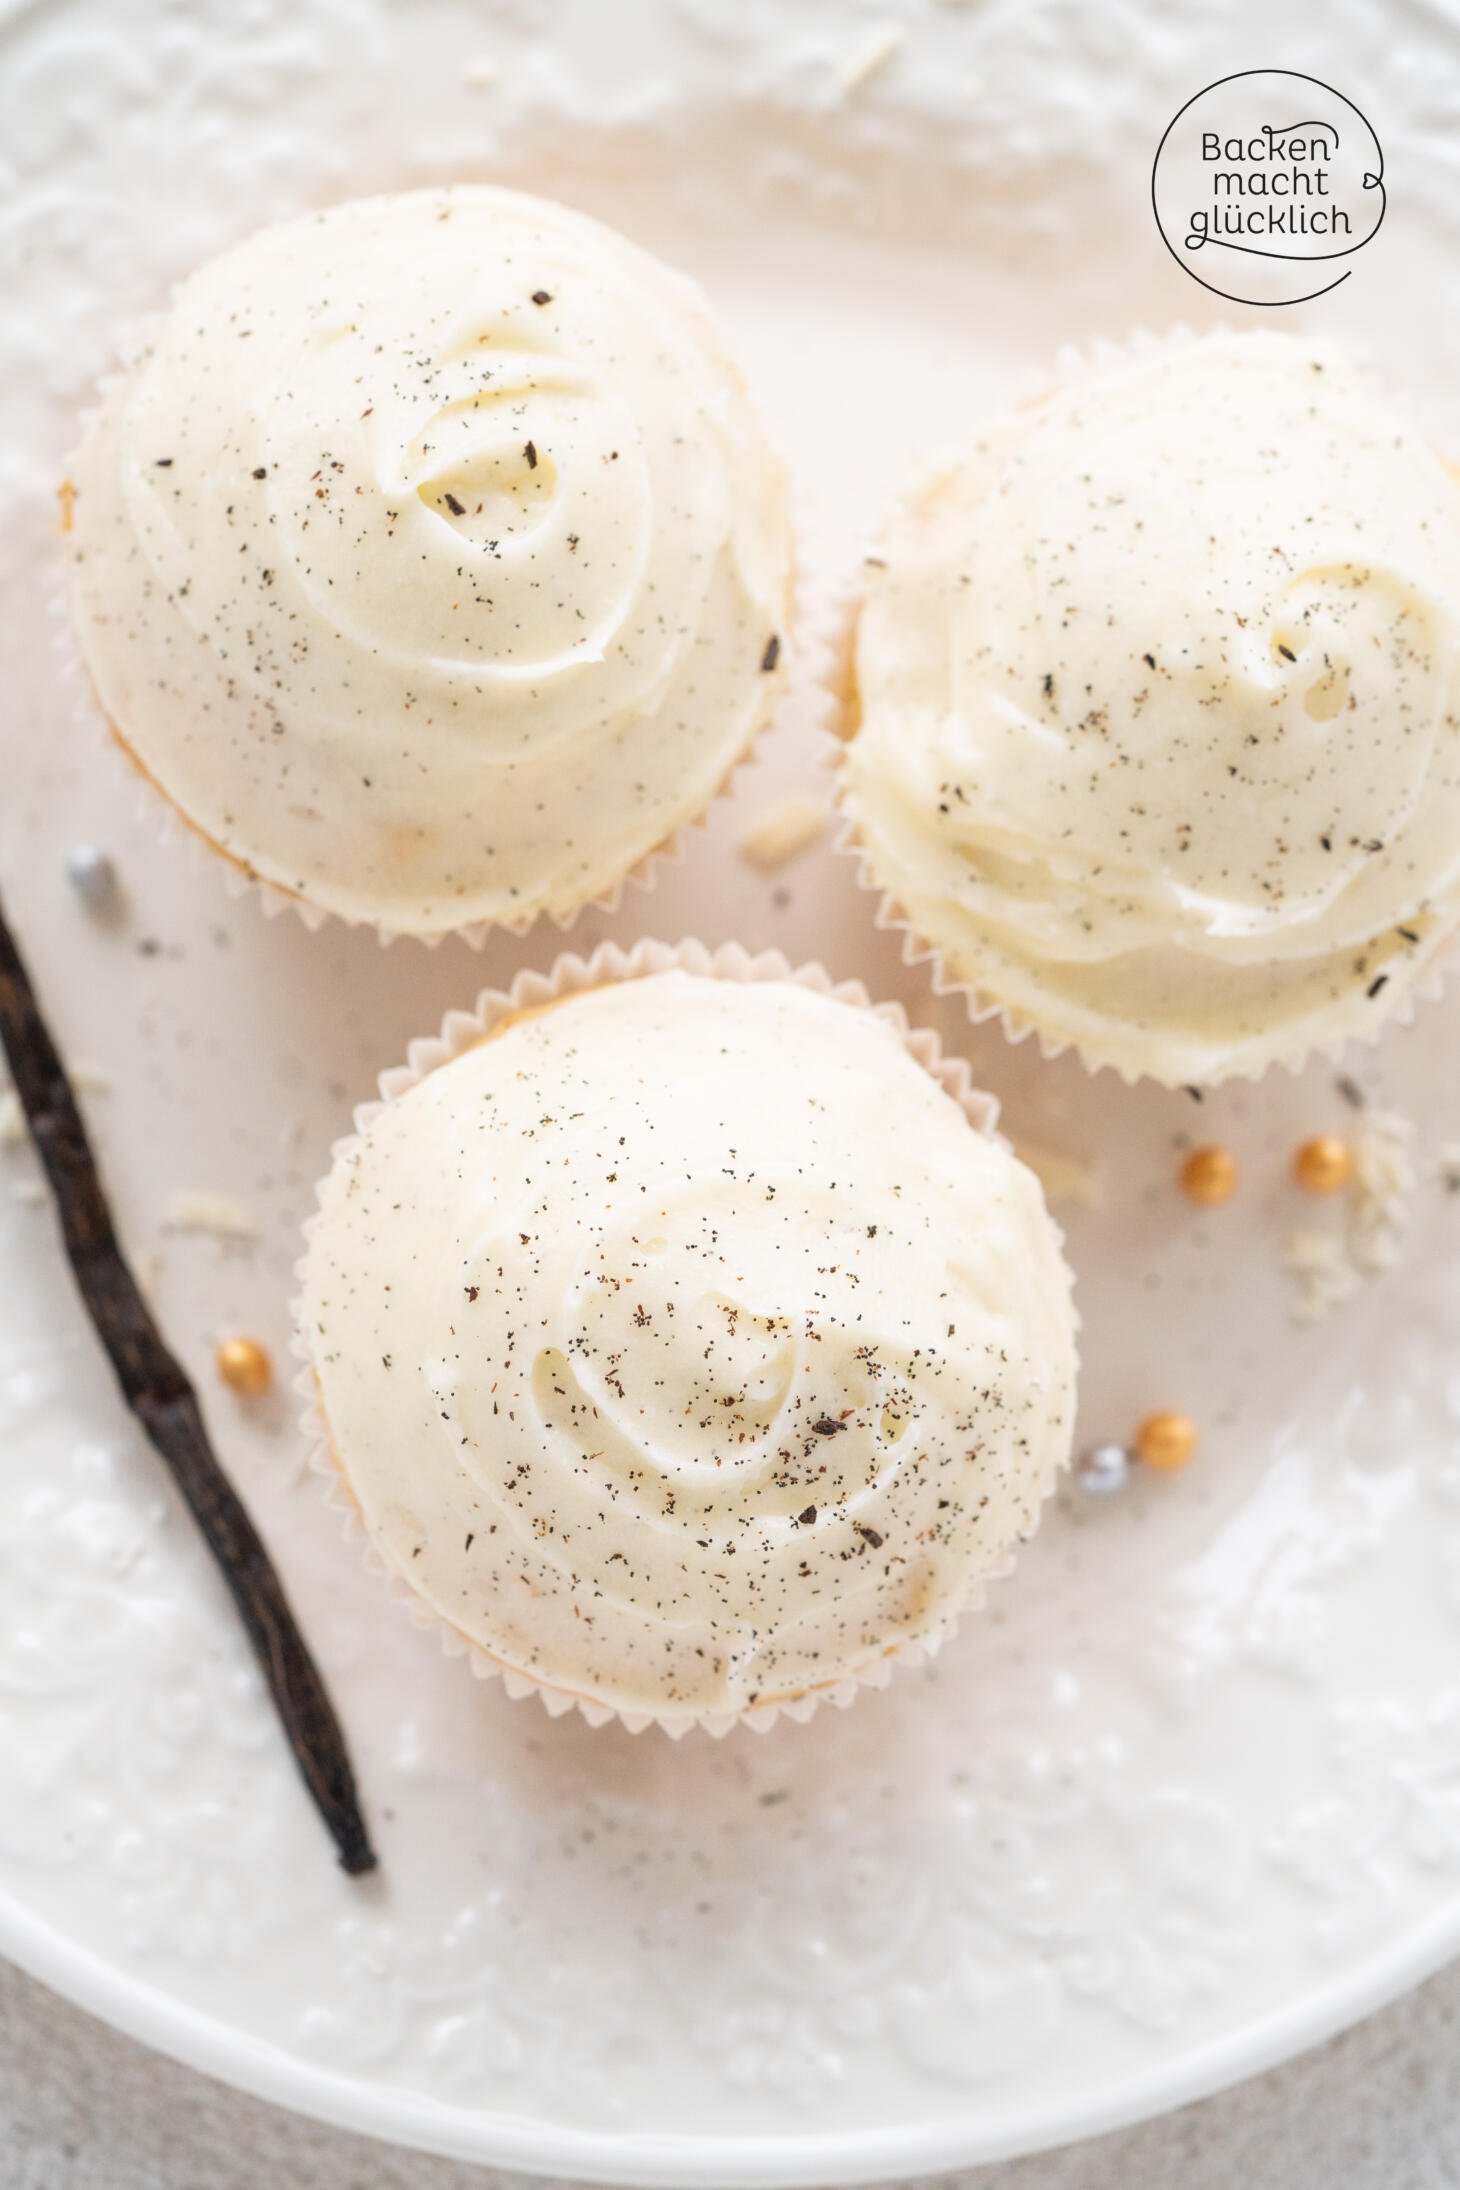 Vanille-Cupcakes mit Buttercreme-Frosting | Backen macht glücklich